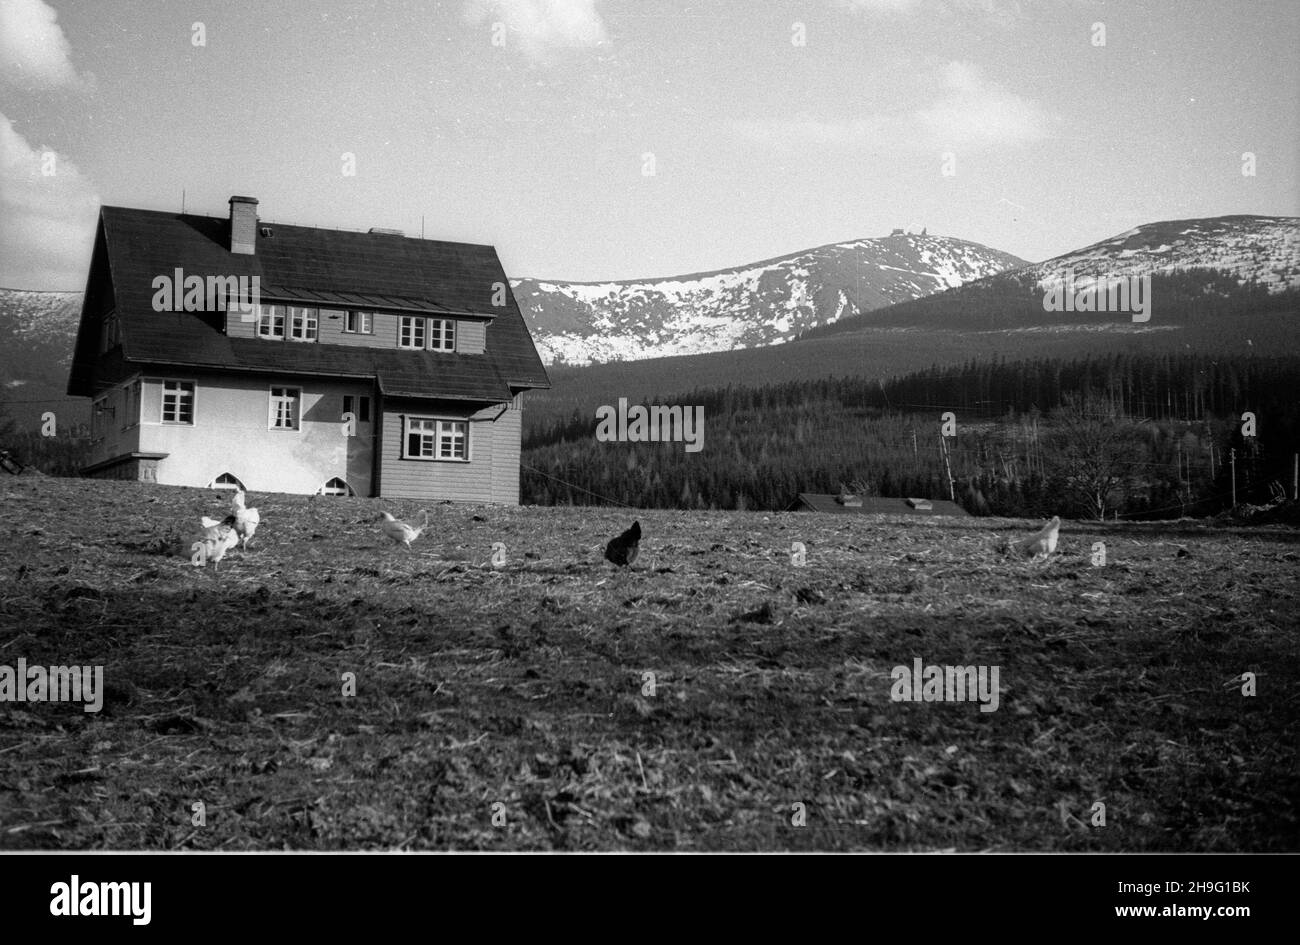 Bierutowice, 1948-04. Widok na pasmo Karkonoszy z najwy¿sz¹ gór¹ Œnie¿k¹ (C) oraz Kop¹ (P). rd  PAP  Dok³adny dzieñ wydarzenia nieustalony.    Bierutowice, April 1948. A view of the Karkonosze Mountains with its highest peaks Sniezka (center) and Kopa (right).  rd  PAP Stock Photo